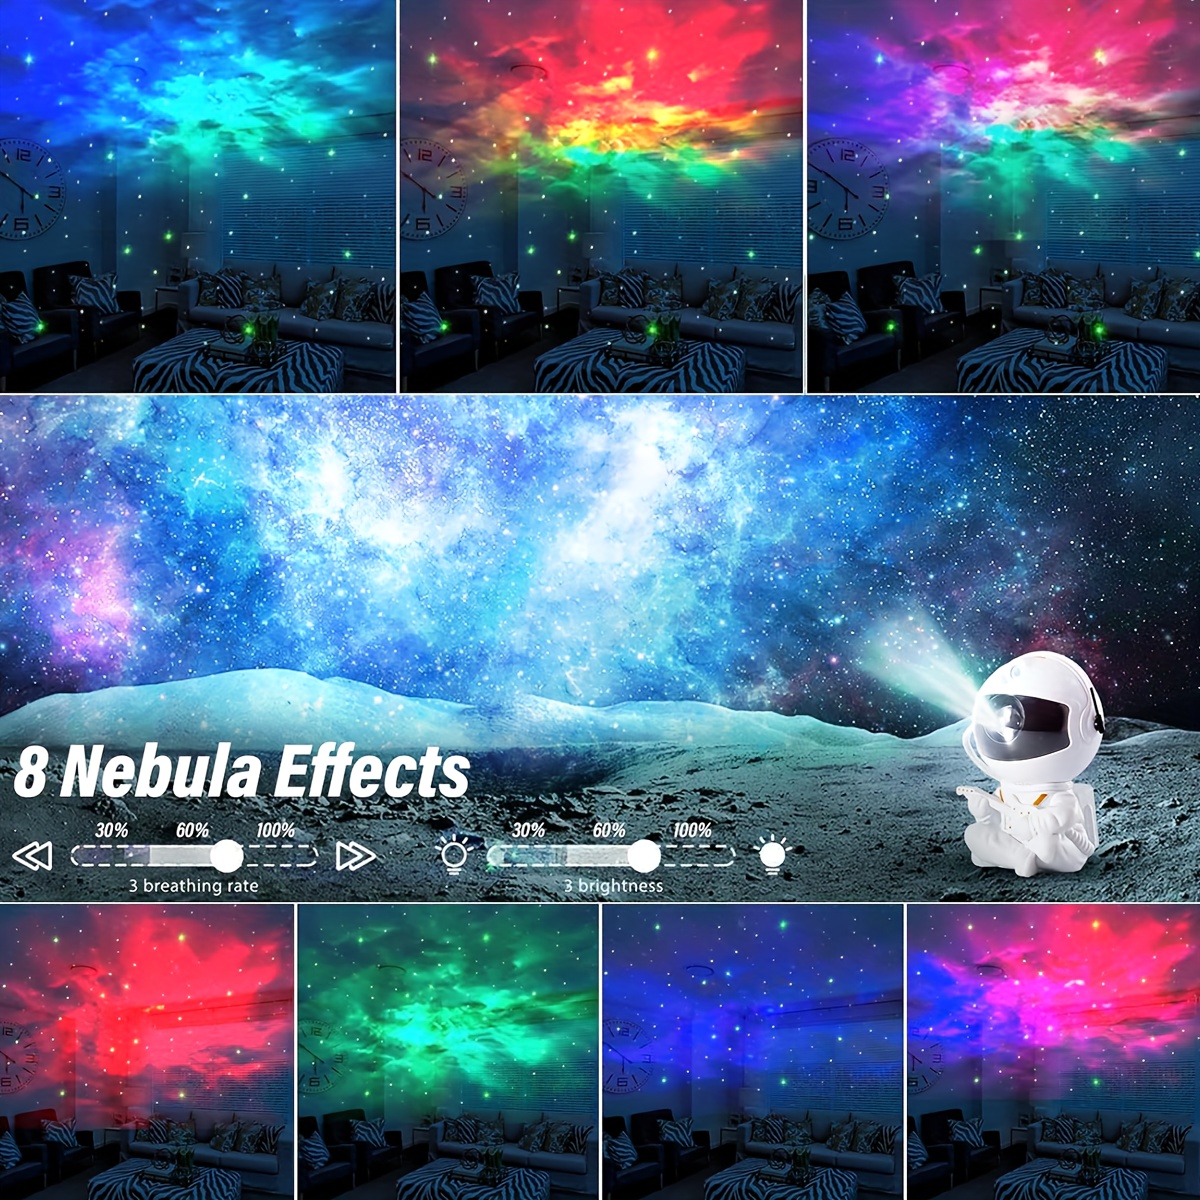 Acheter Aurora LED étoile galaxie projecteur USB nébuleuse lampe enfants  veilleuse chambre décor astronaute lumière étoilée rotative lampe de nuit